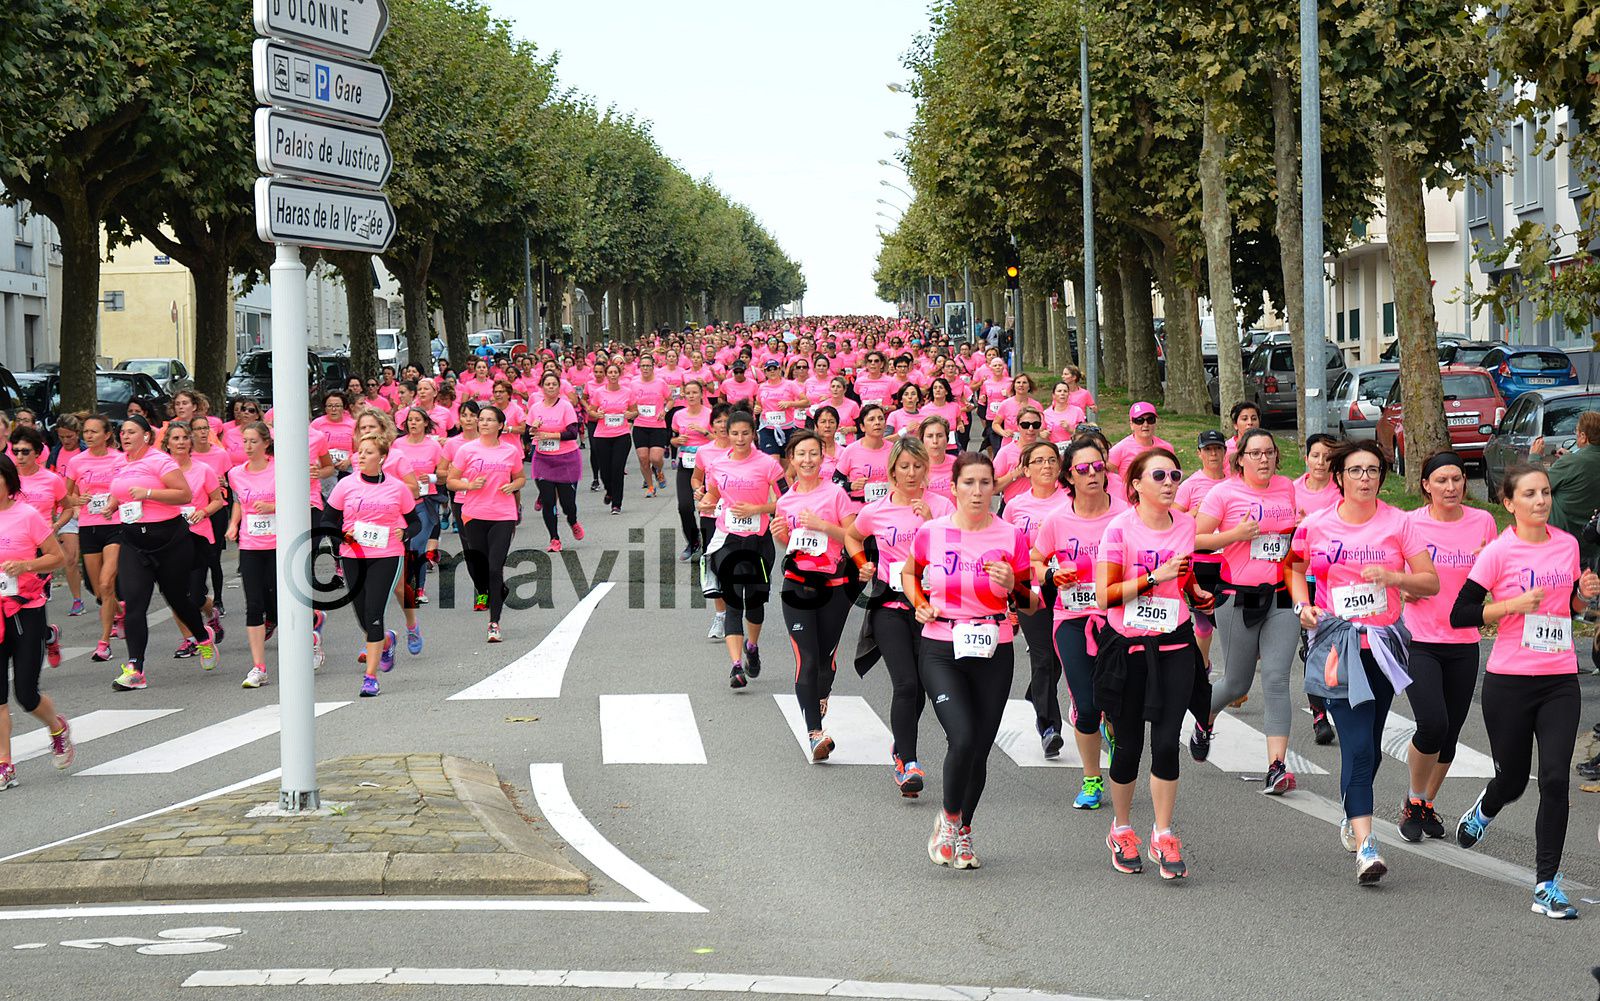 Joséphine 2016. 5000 roses marchent et courent contre le cancer [Images].